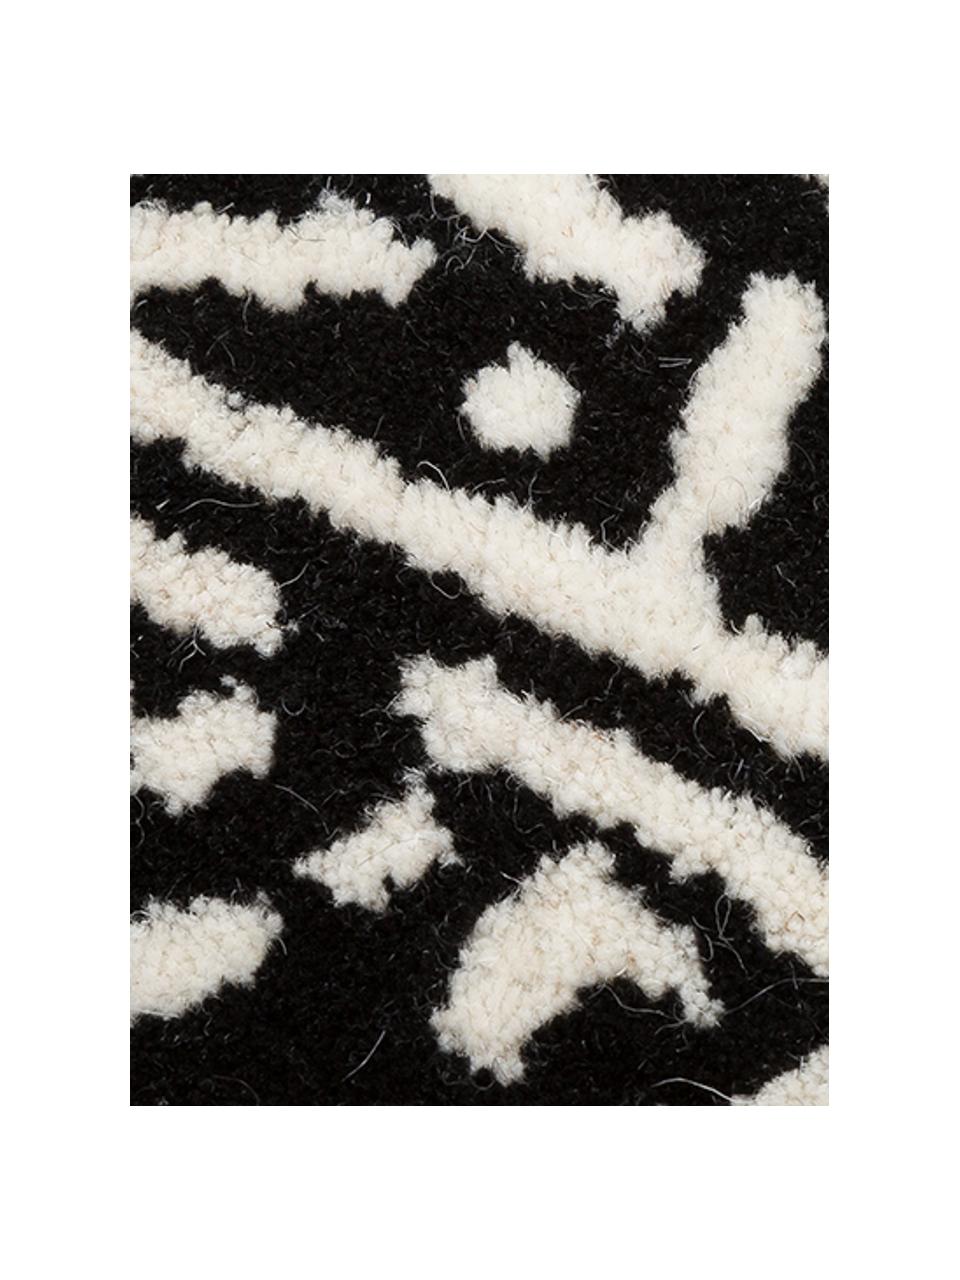 Handgetufteter Wollteppich Savanna Zebra, Flor: 100% Wolle, Schwarz, Creme, B 160 x L 200 cm (Größe M)